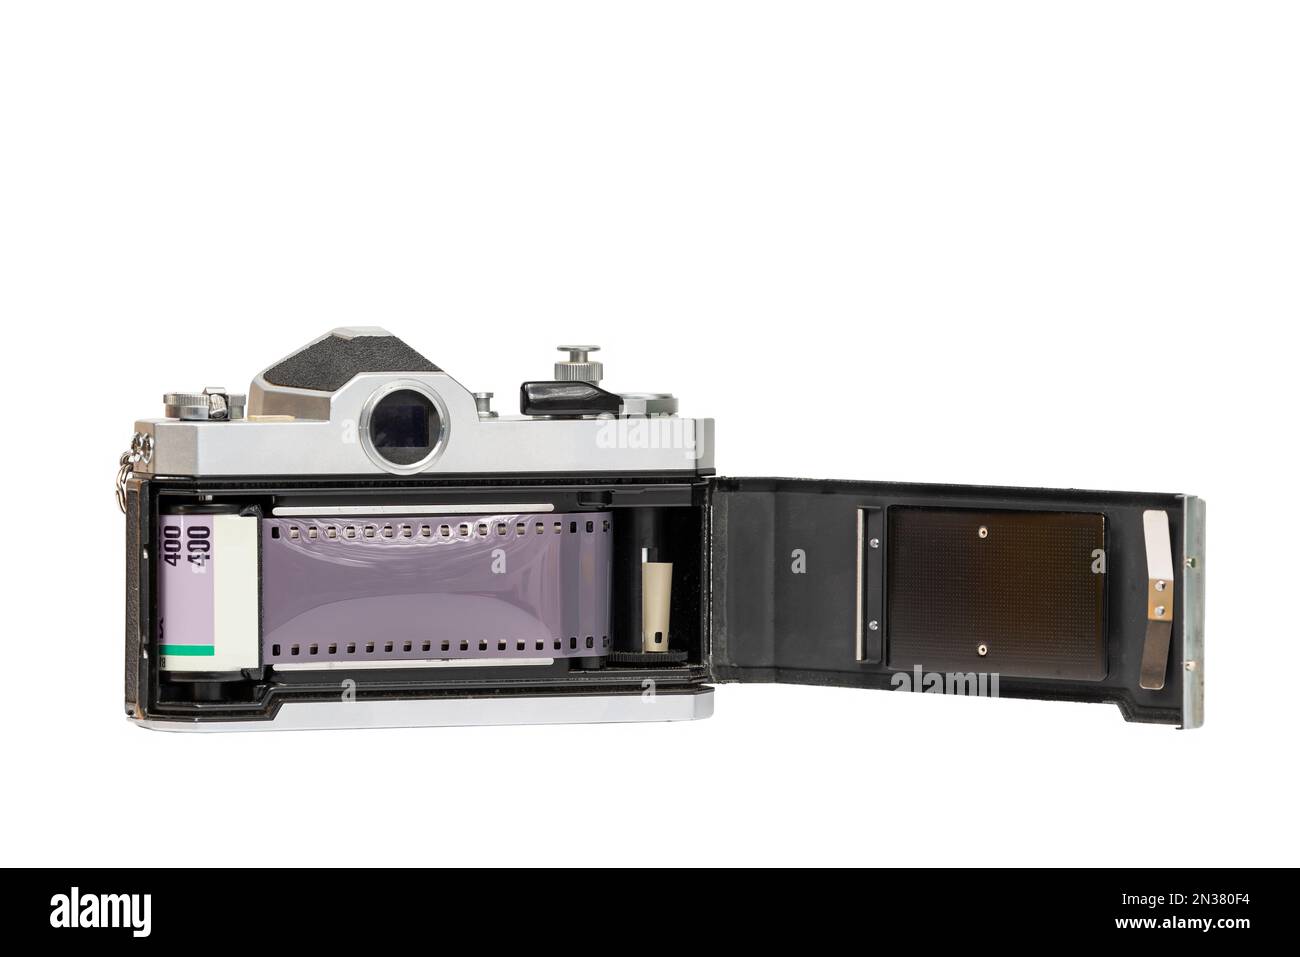 Die offene Rückseite des einzelnen Objektivreflexes zeigt die Filmkanisterkammer, die Filmaufnahmerolle und die Druckplatte auf der Kamerarückseite. Stockfoto